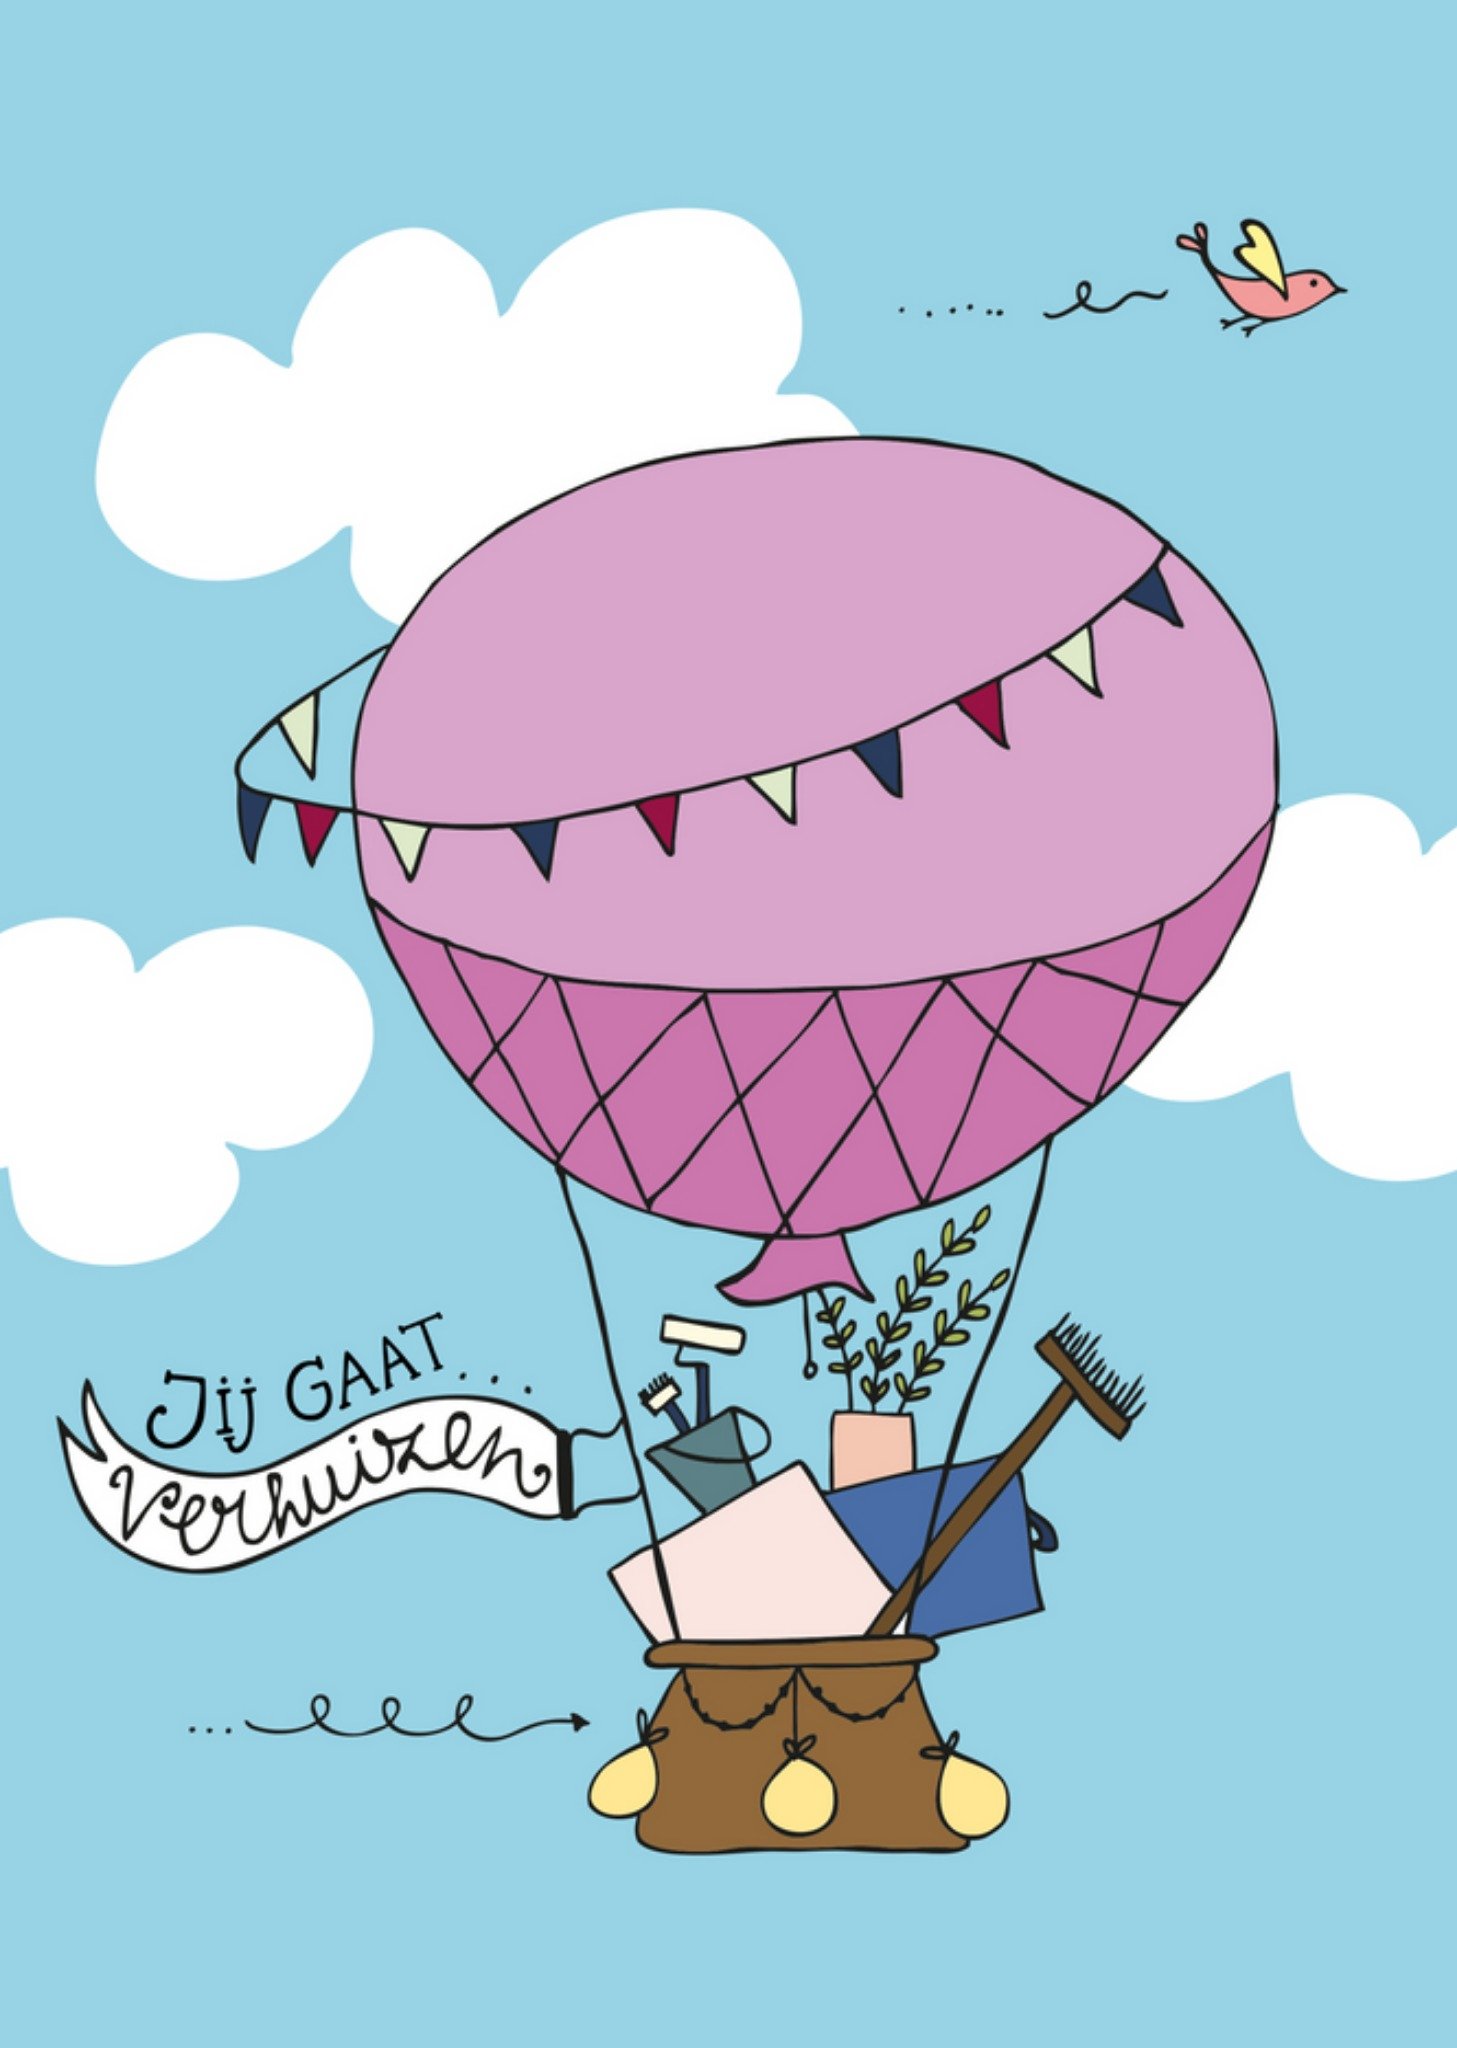 Funny Side Up - Nieuwe Woning kaart- Heteluchtballon